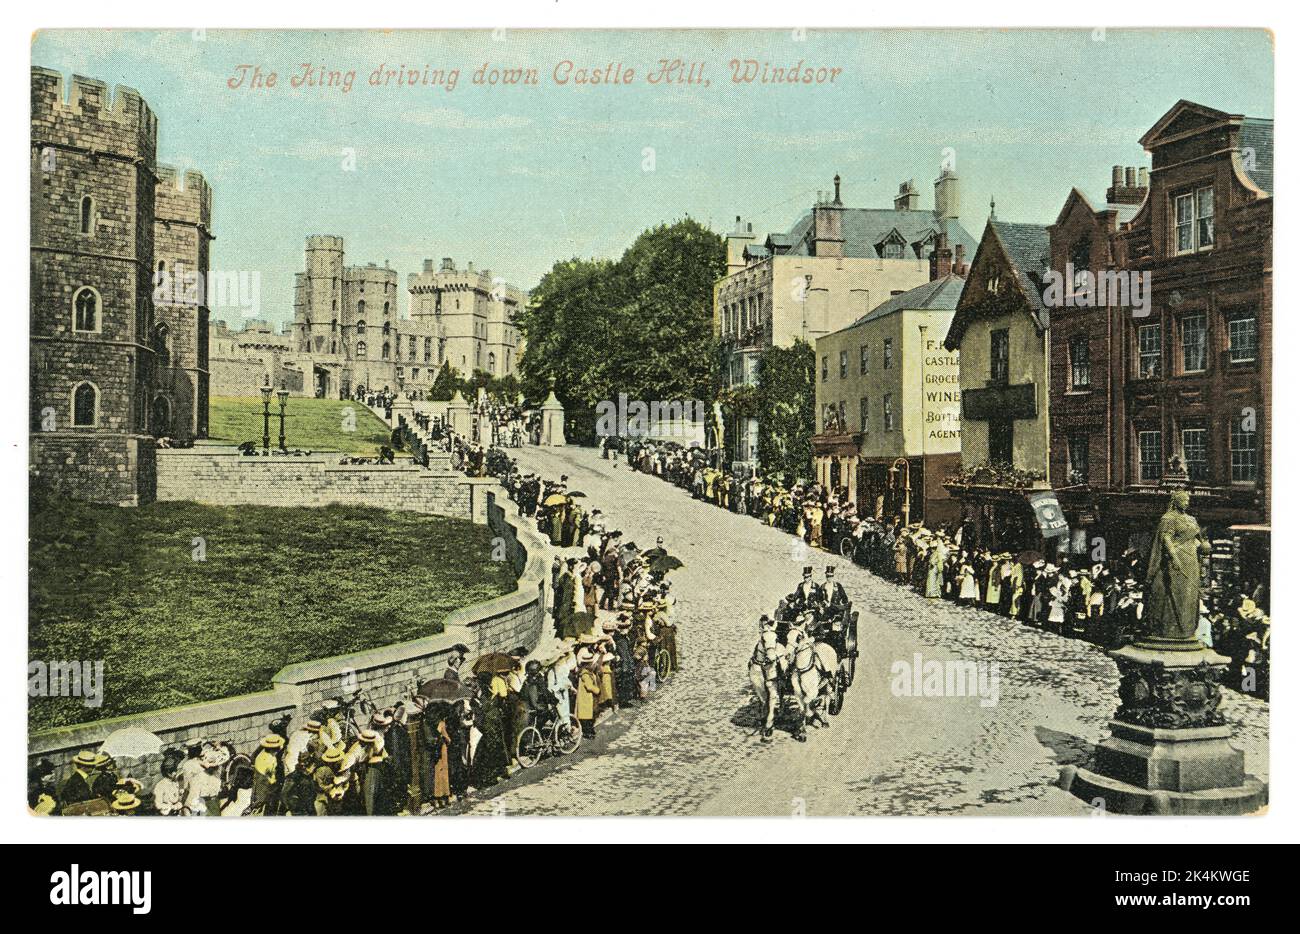 Carte postale originale de couleur teintée de l'époque édouardienne représentant le roi (Edward VII) descendant de Castle Hill, Windsor, Berkshire, Angleterre. Vers 1909, 1910 Banque D'Images